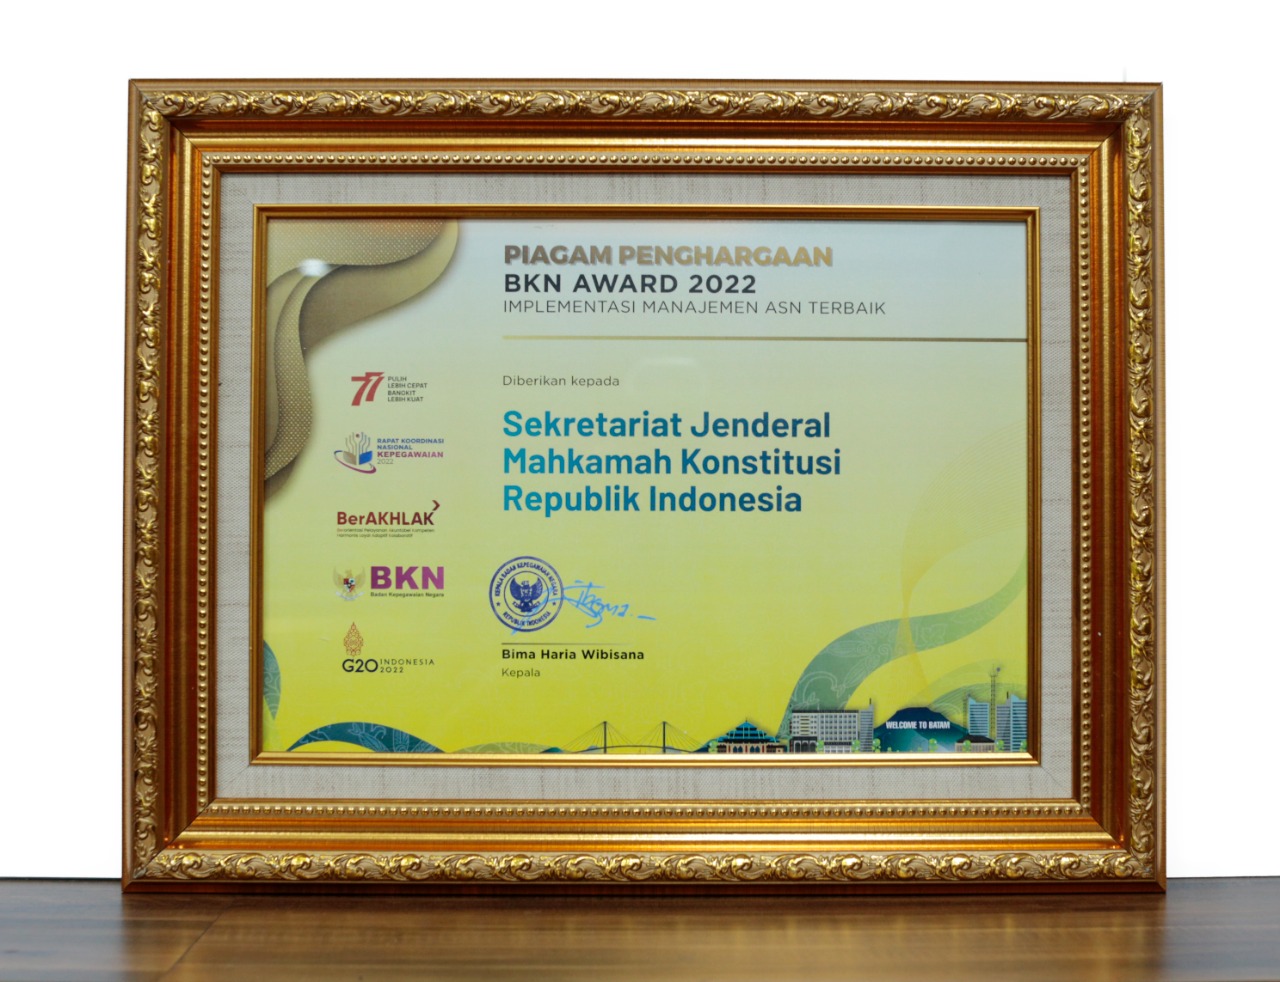 Piagam Penghargaan BKN Award 2022 Implementasi Manajemen ASN Terbaik